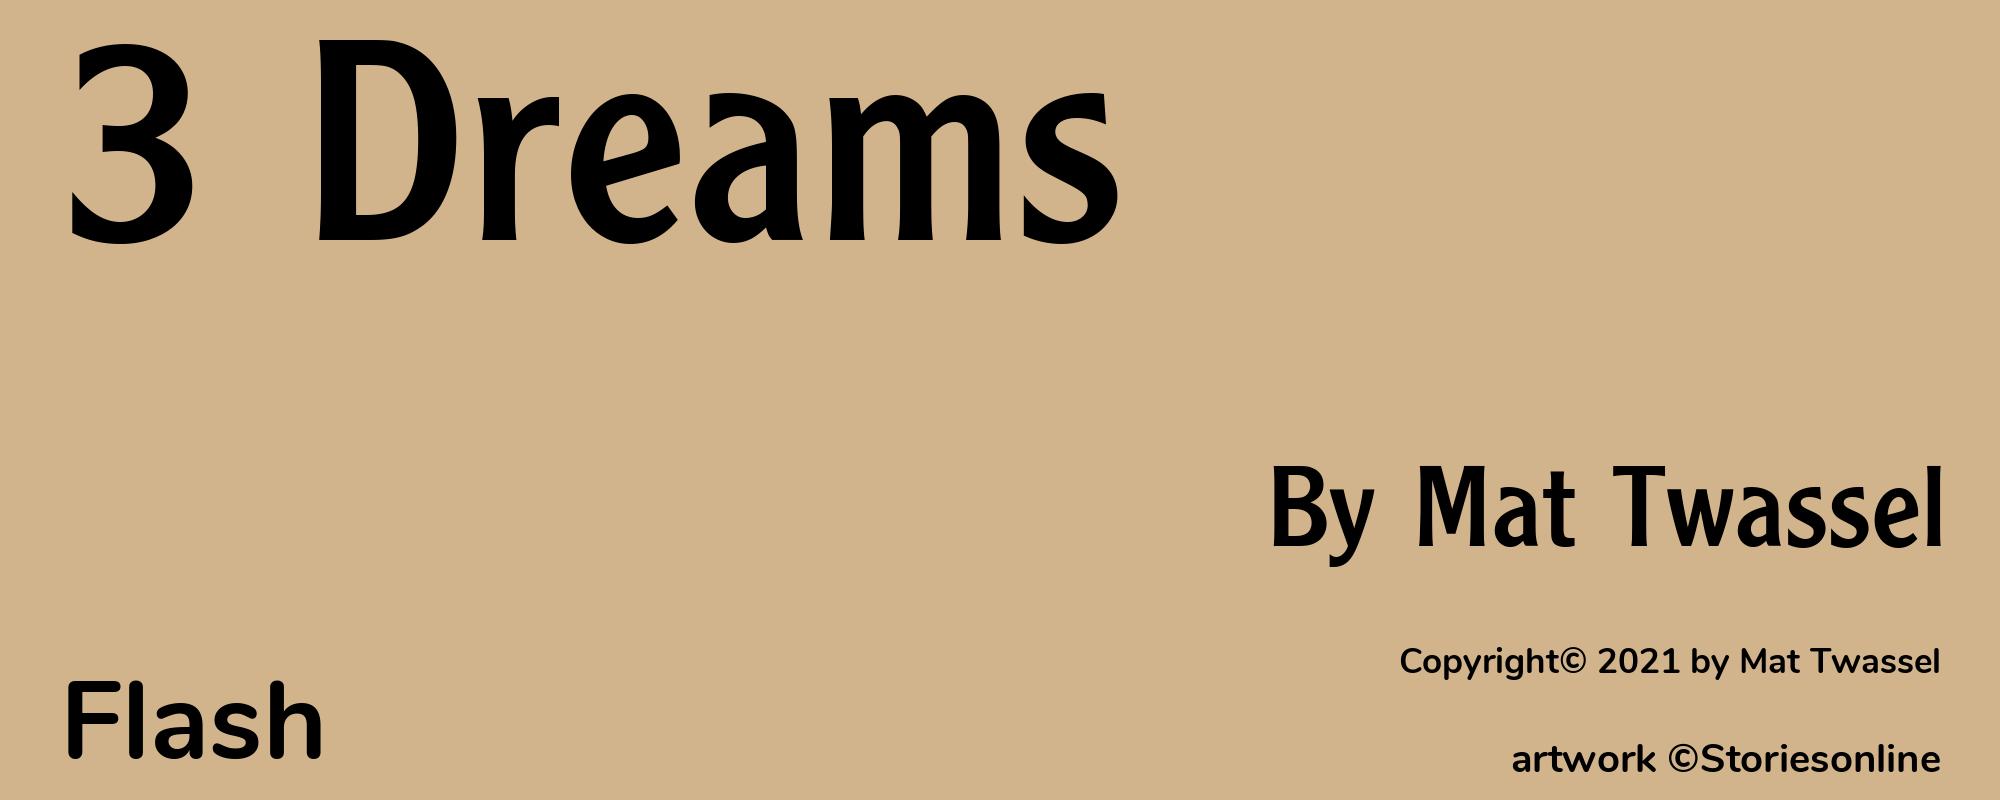 3 Dreams - Cover